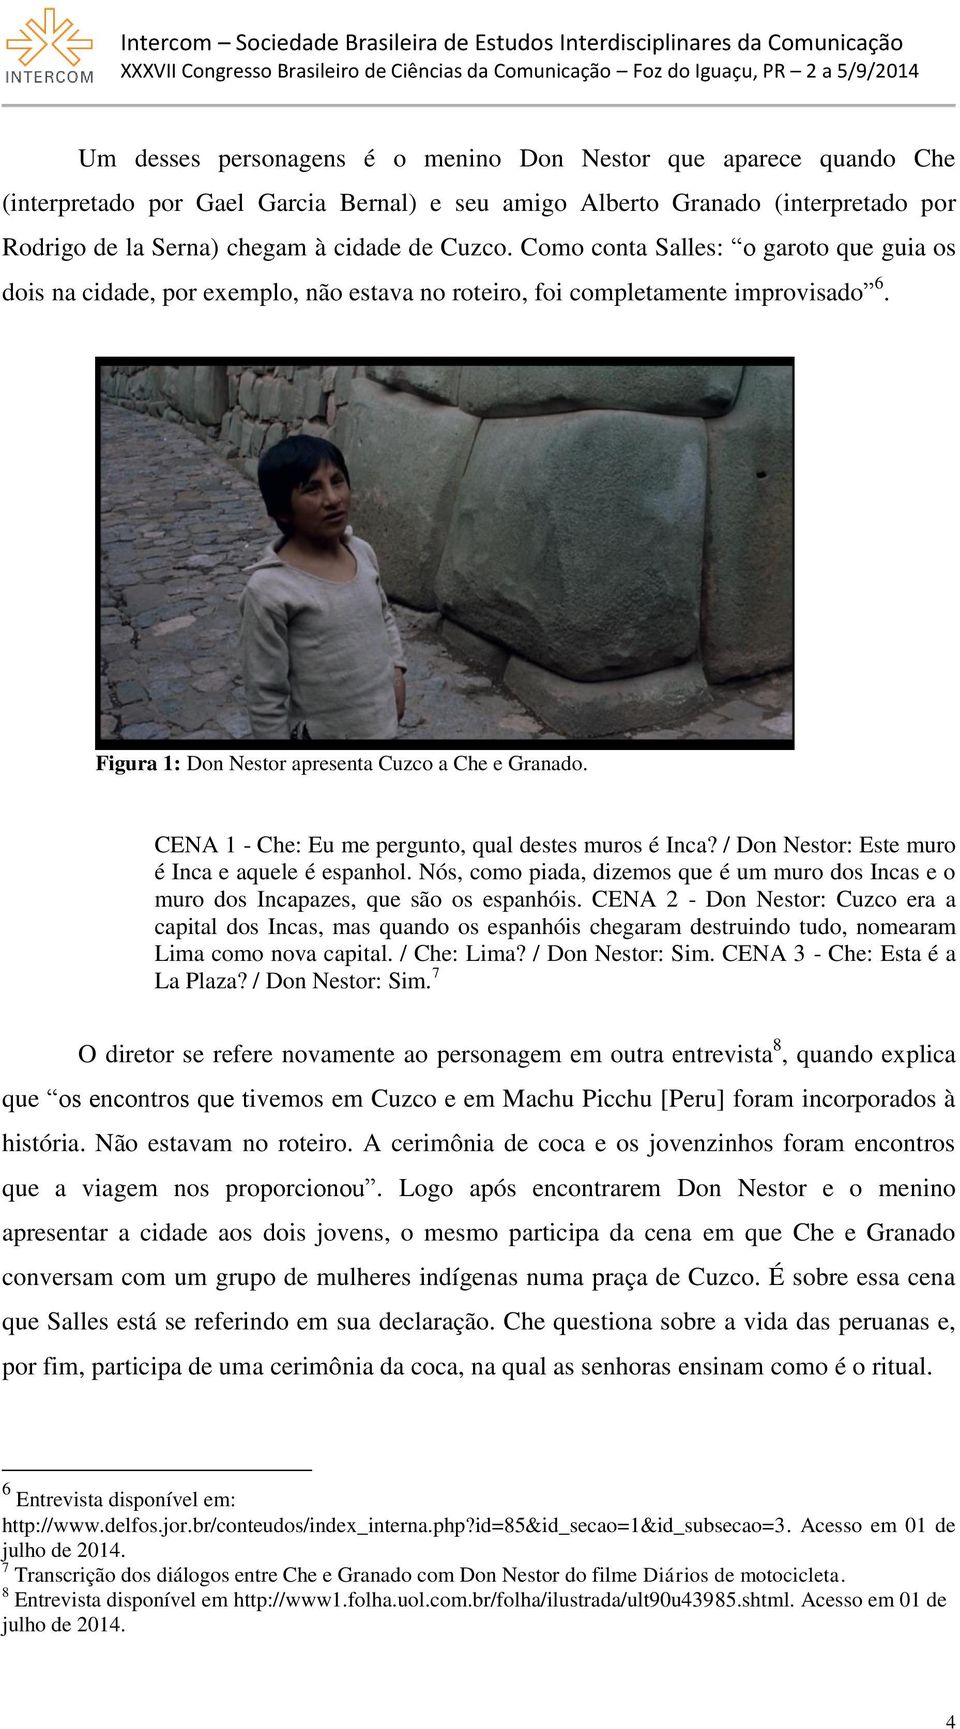 CENA 1 - Che: Eu me pergunto, qual destes muros é Inca? / Don Nestor: Este muro é Inca e aquele é espanhol.